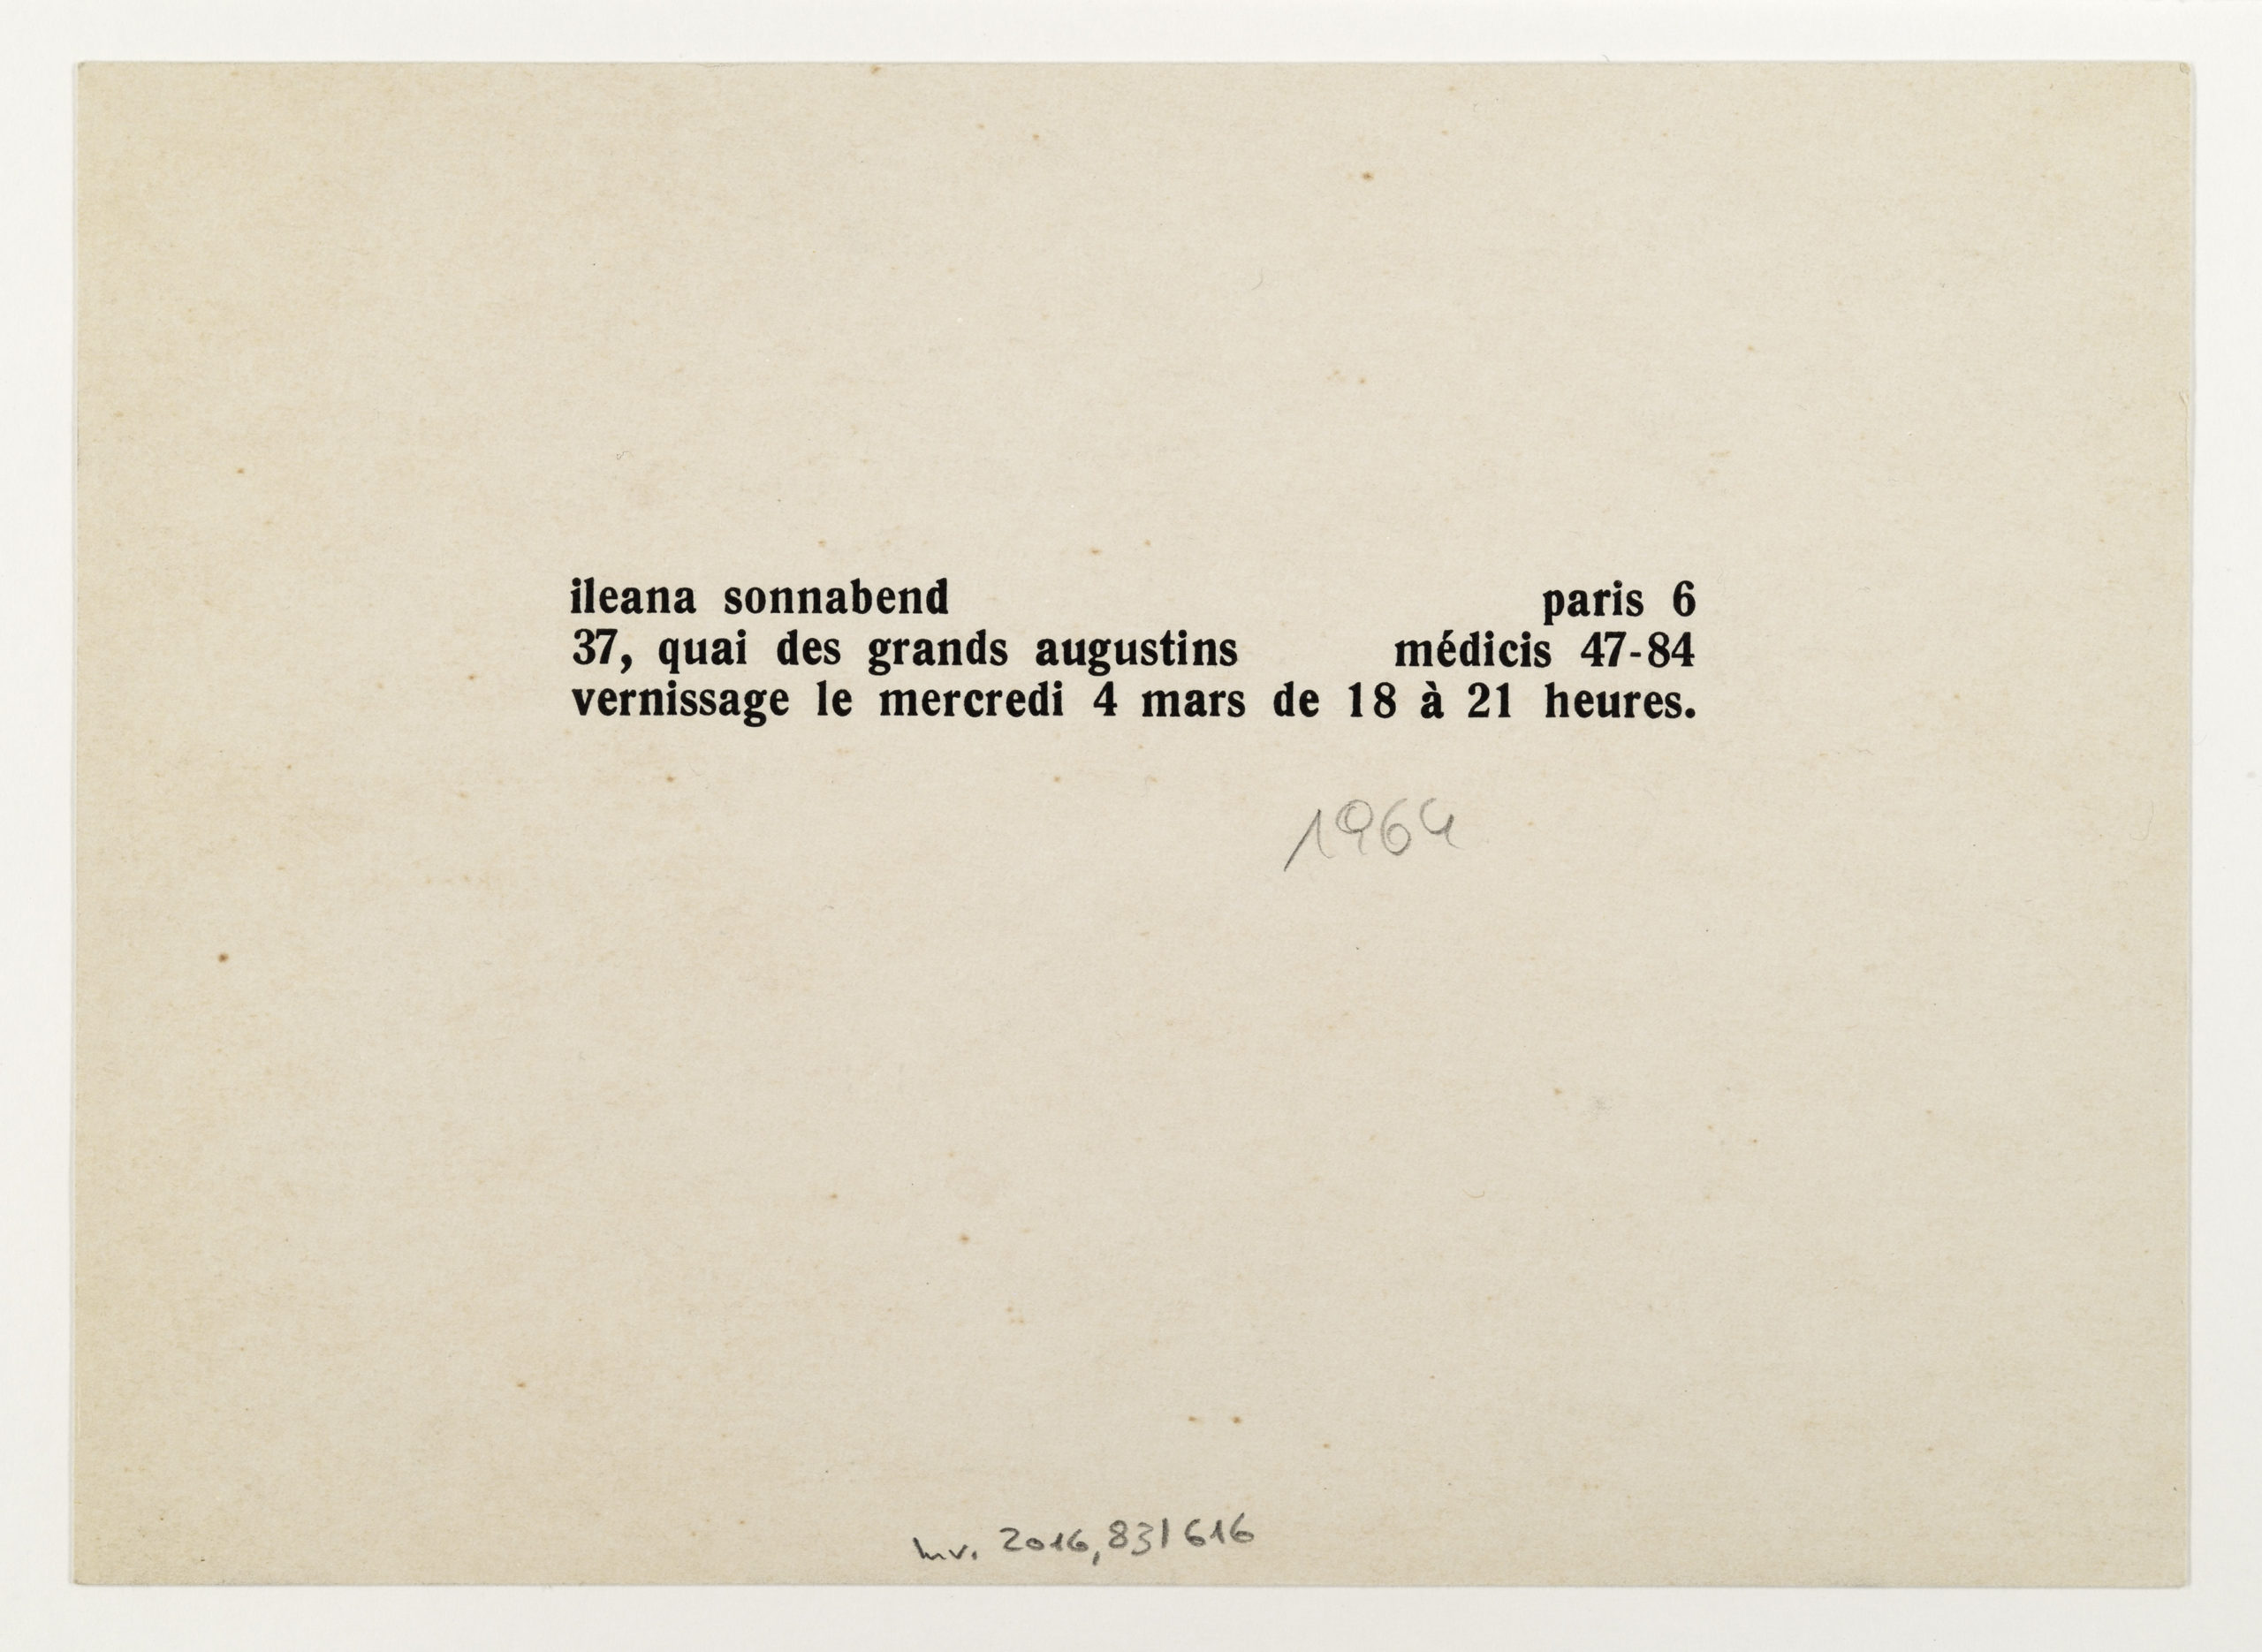 Pistoletto, Galerie Ileana Sonnabend, Paris 1964 (Invitation); ; Sammlung Marzona, Kunstbibliothek – Staatliche Museen zu Berlin